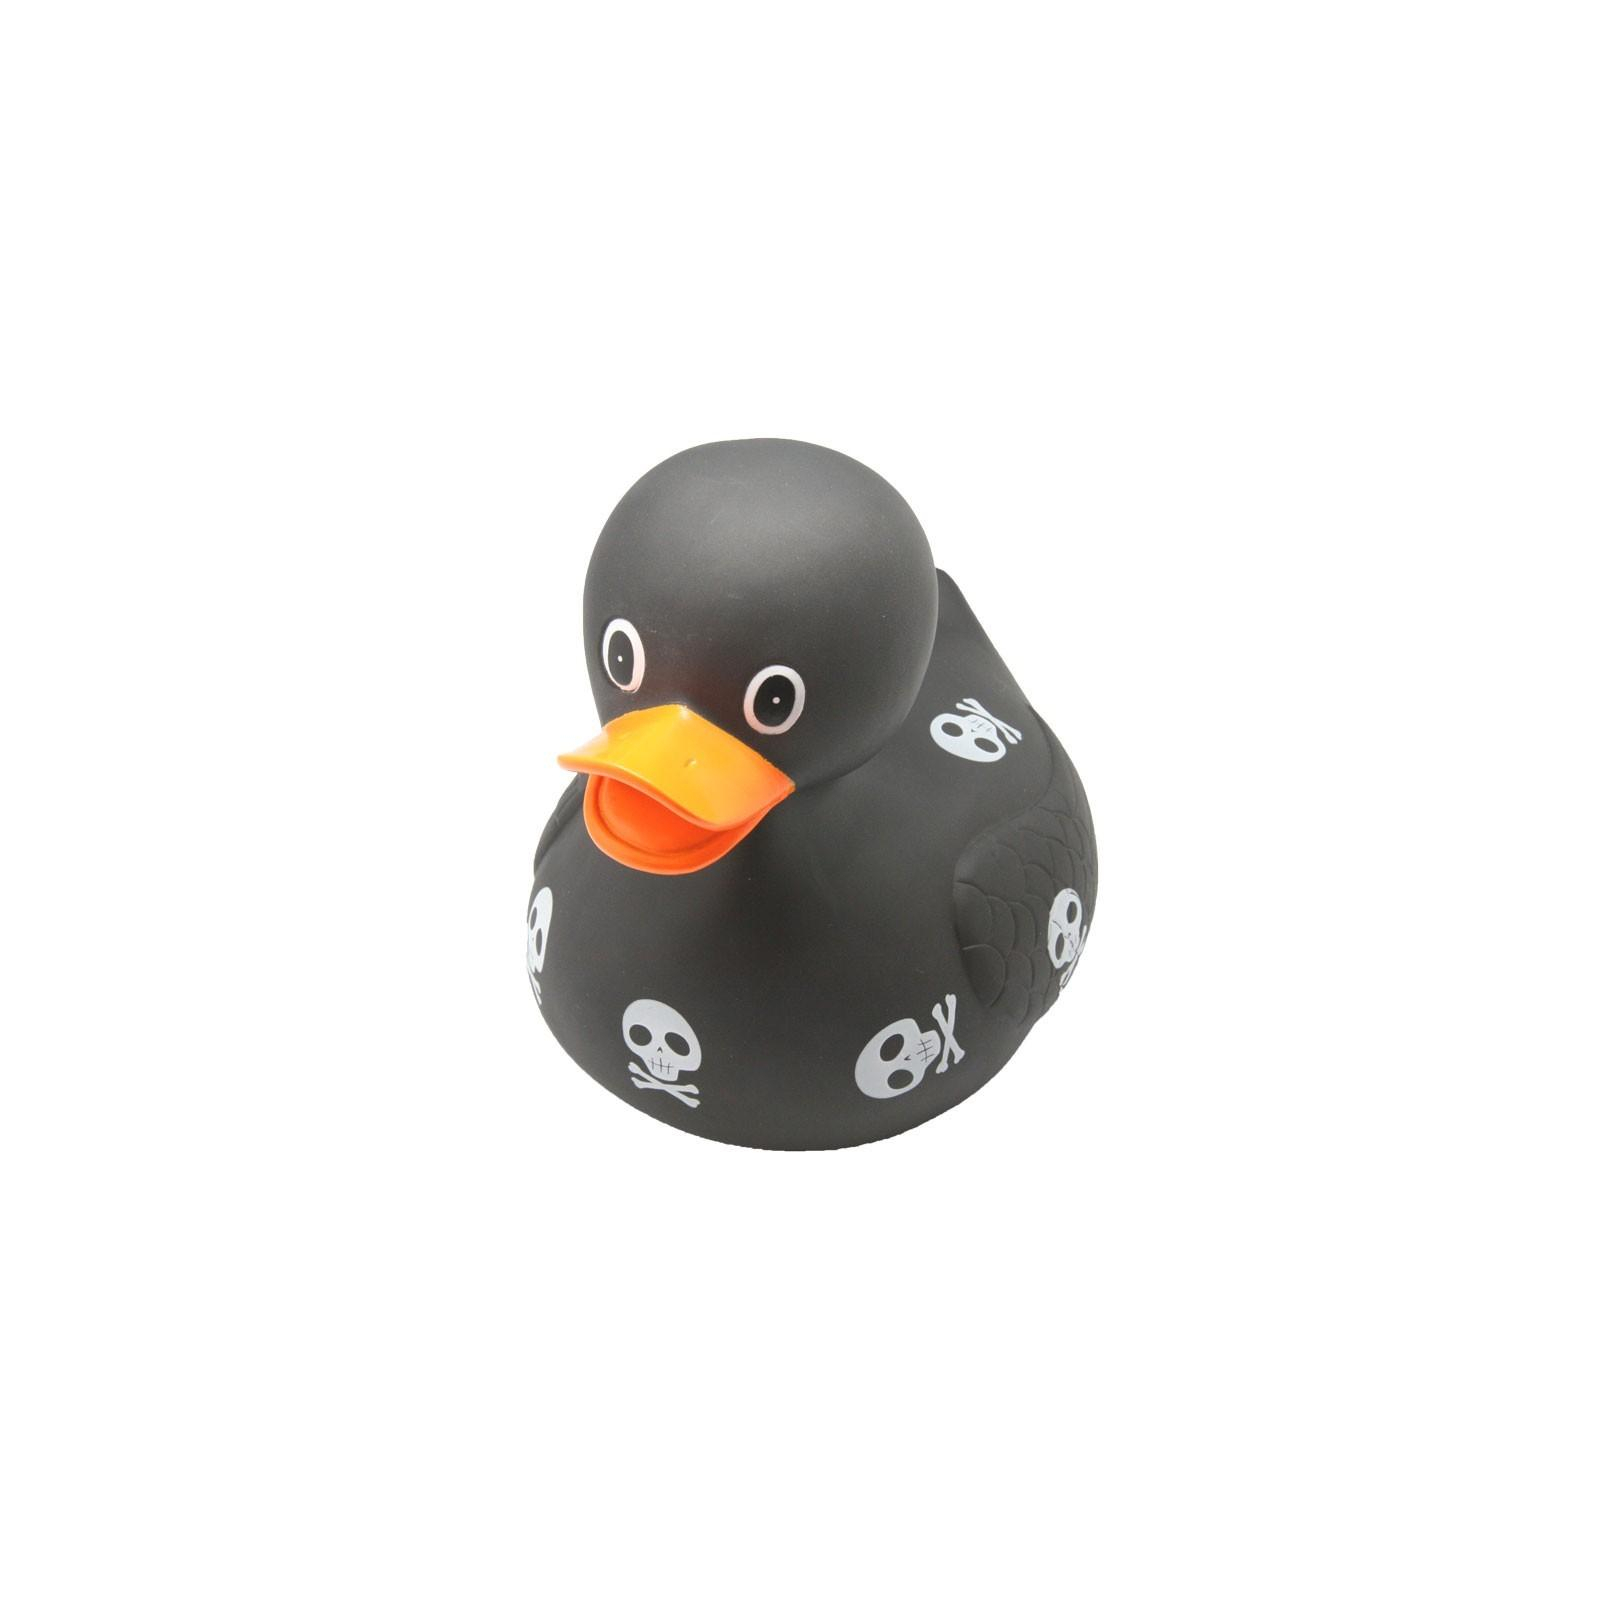 Іграшка для ванної Funny Ducks Пират утка (L1835)